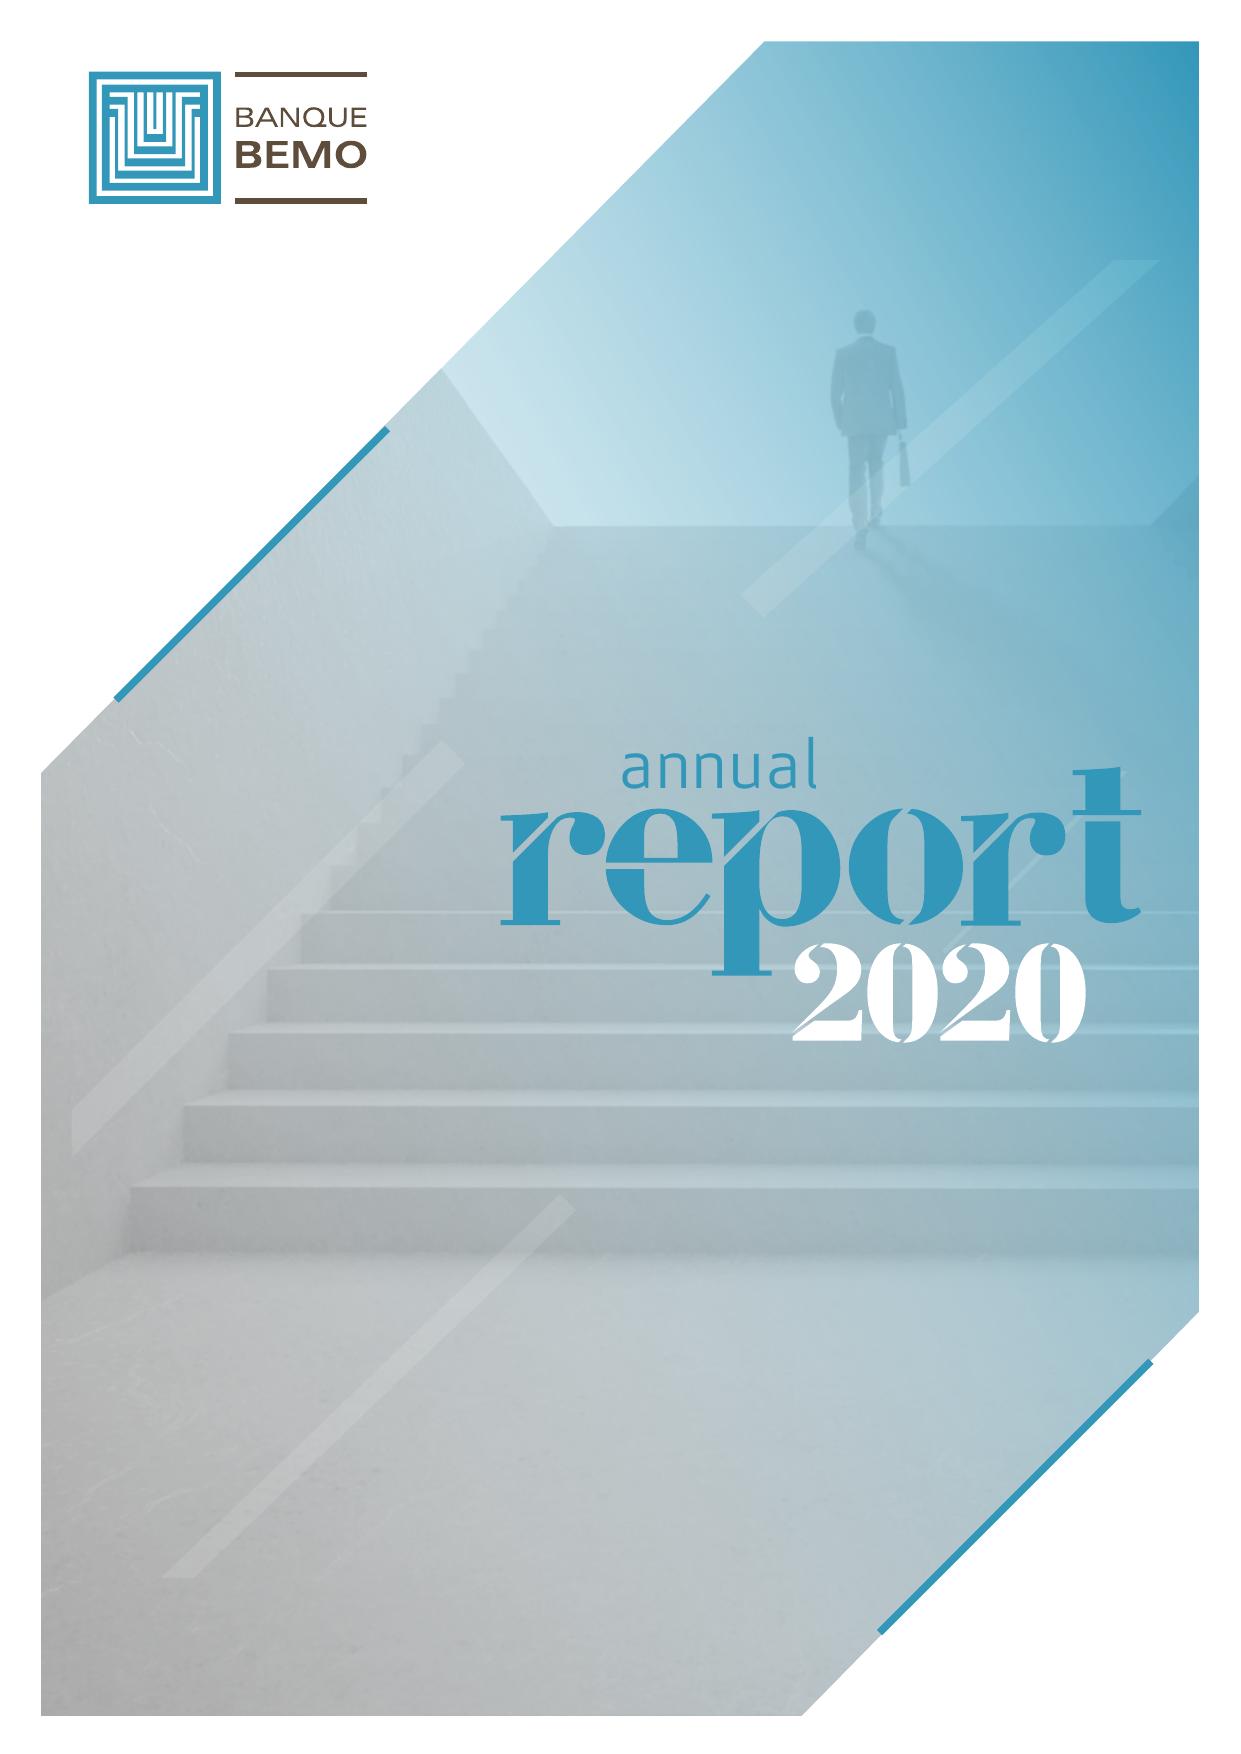 BEMOBANK Annual Report